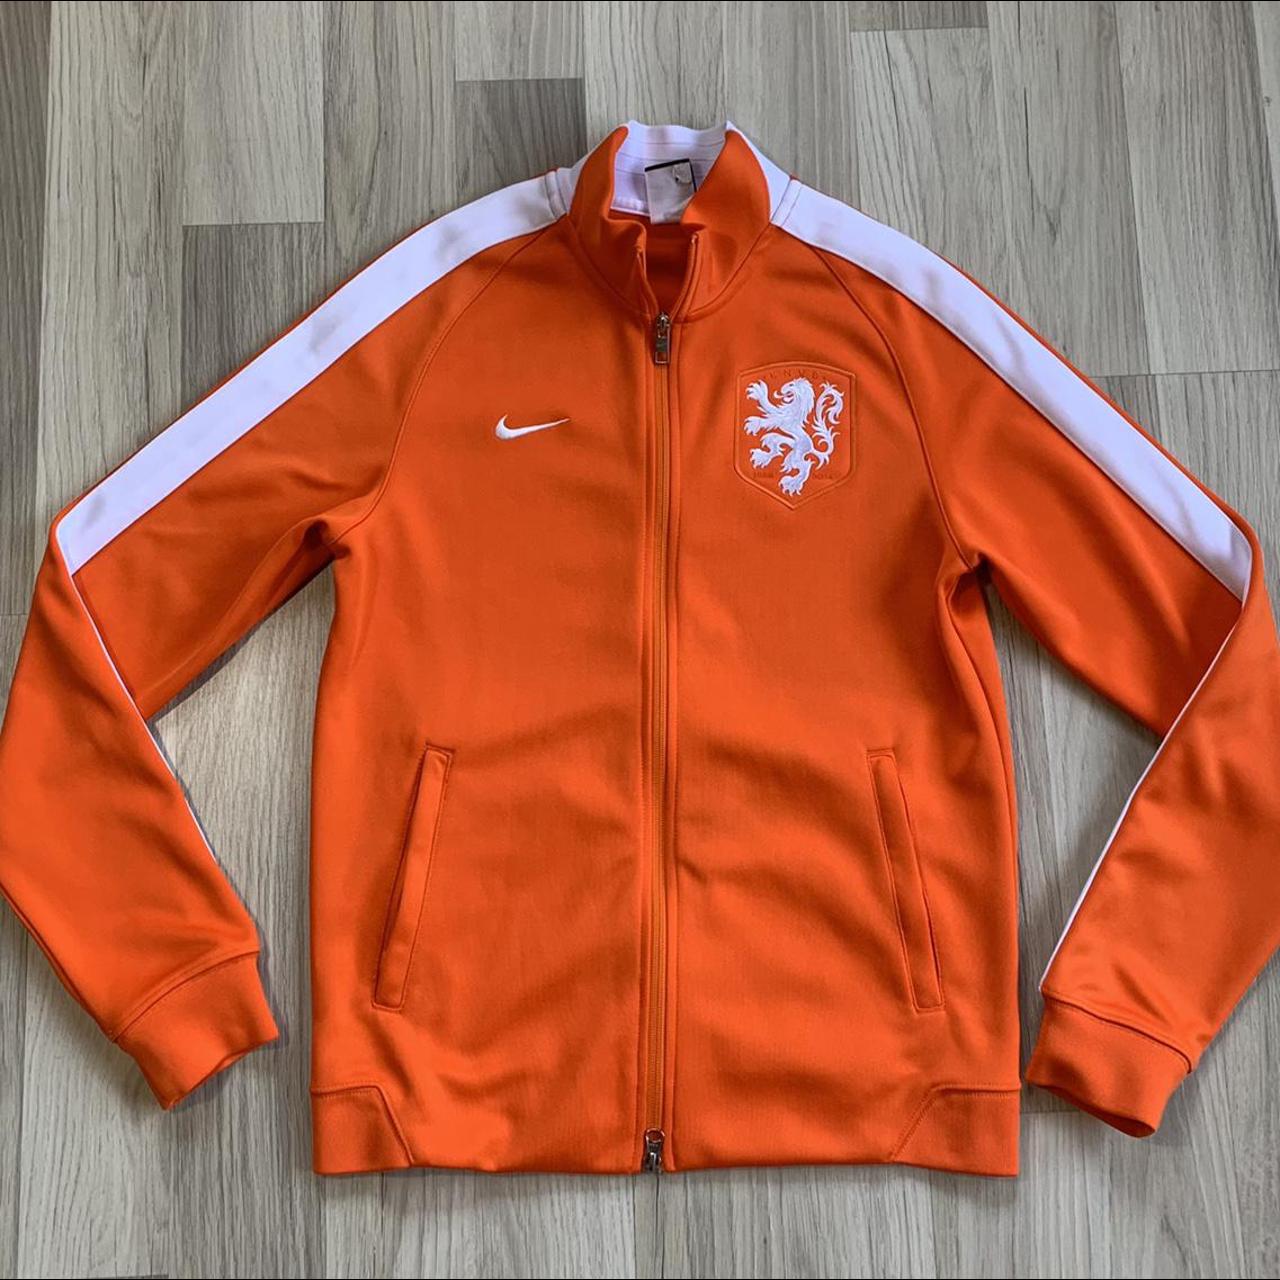 2014 Netherlands Soccer National Team Nike Full Zip... - Depop